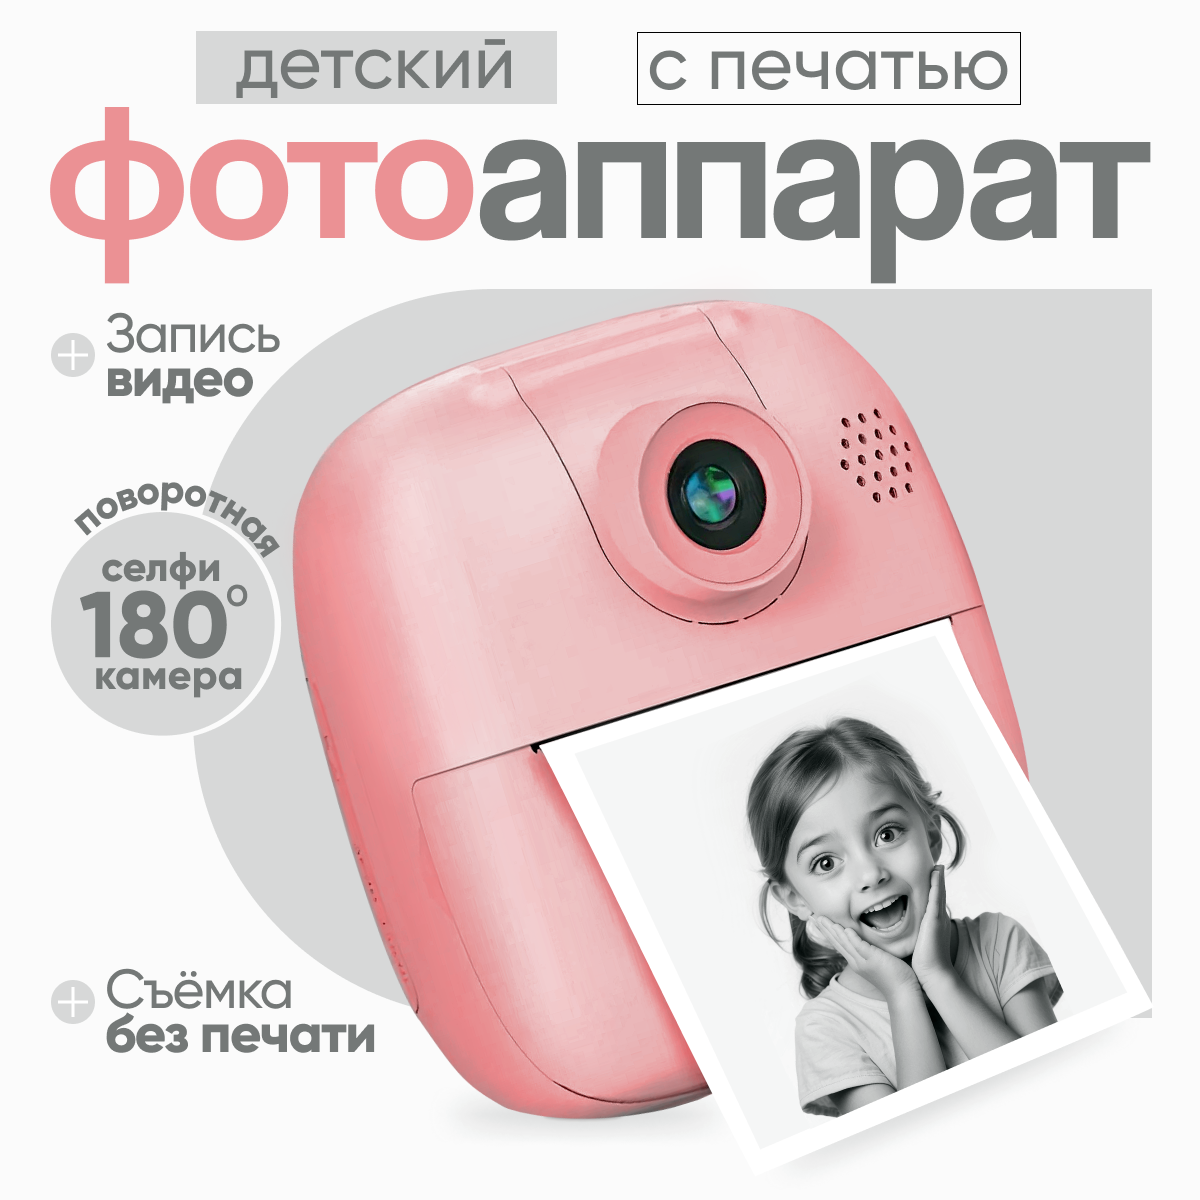 Детский цифровой фотоаппарат с моментальной печатью PRINTCAM RABBIT / Полароид детский / мгновенная печать